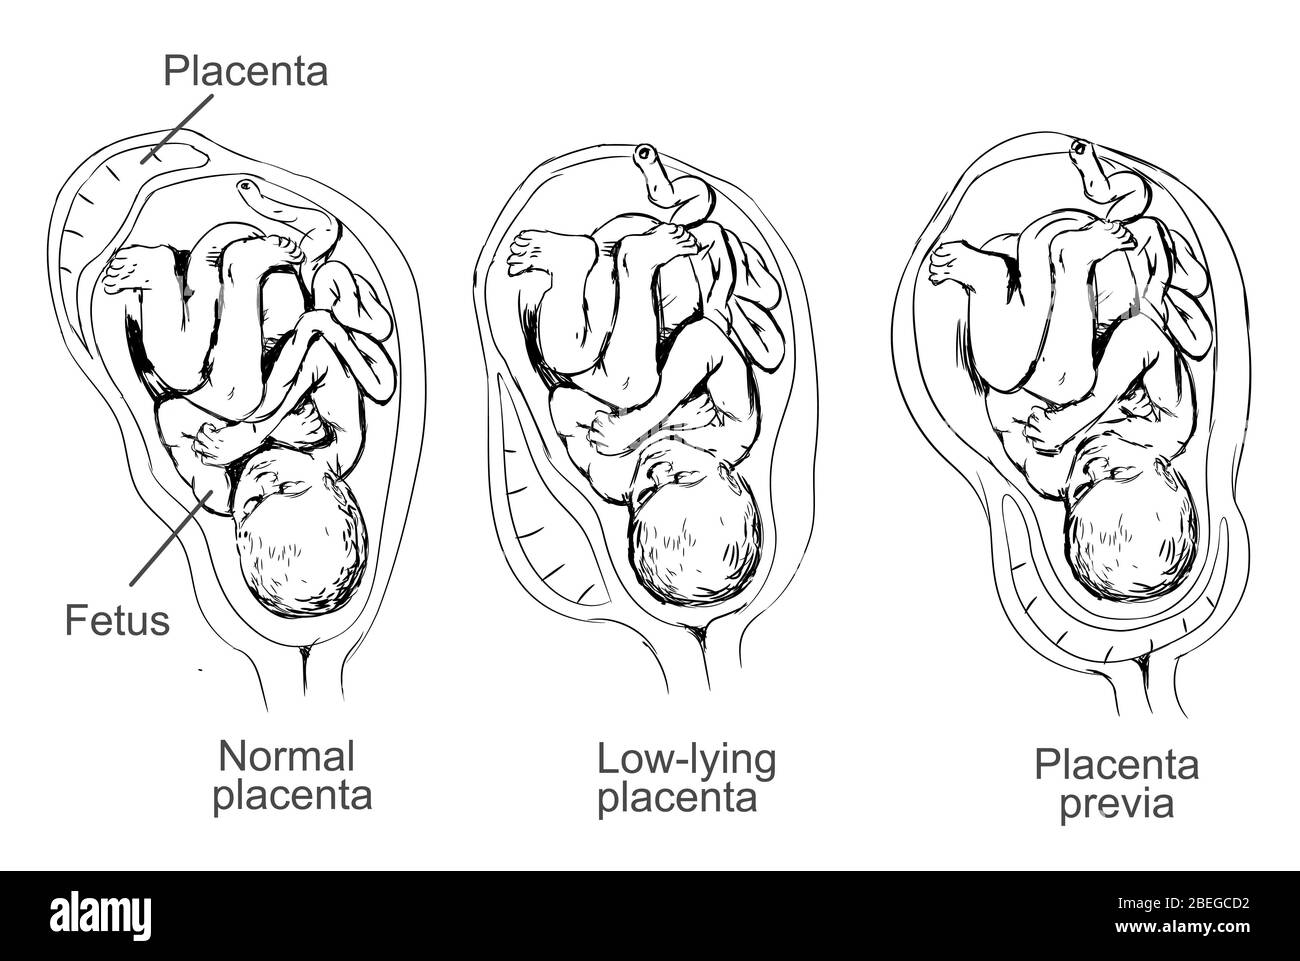 Illustration de la prévia placenta, condition dans laquelle le placenta se trouve bas dans l'utérus et couvre le col de l'utérus, causant des complications de grossesse. Banque D'Images